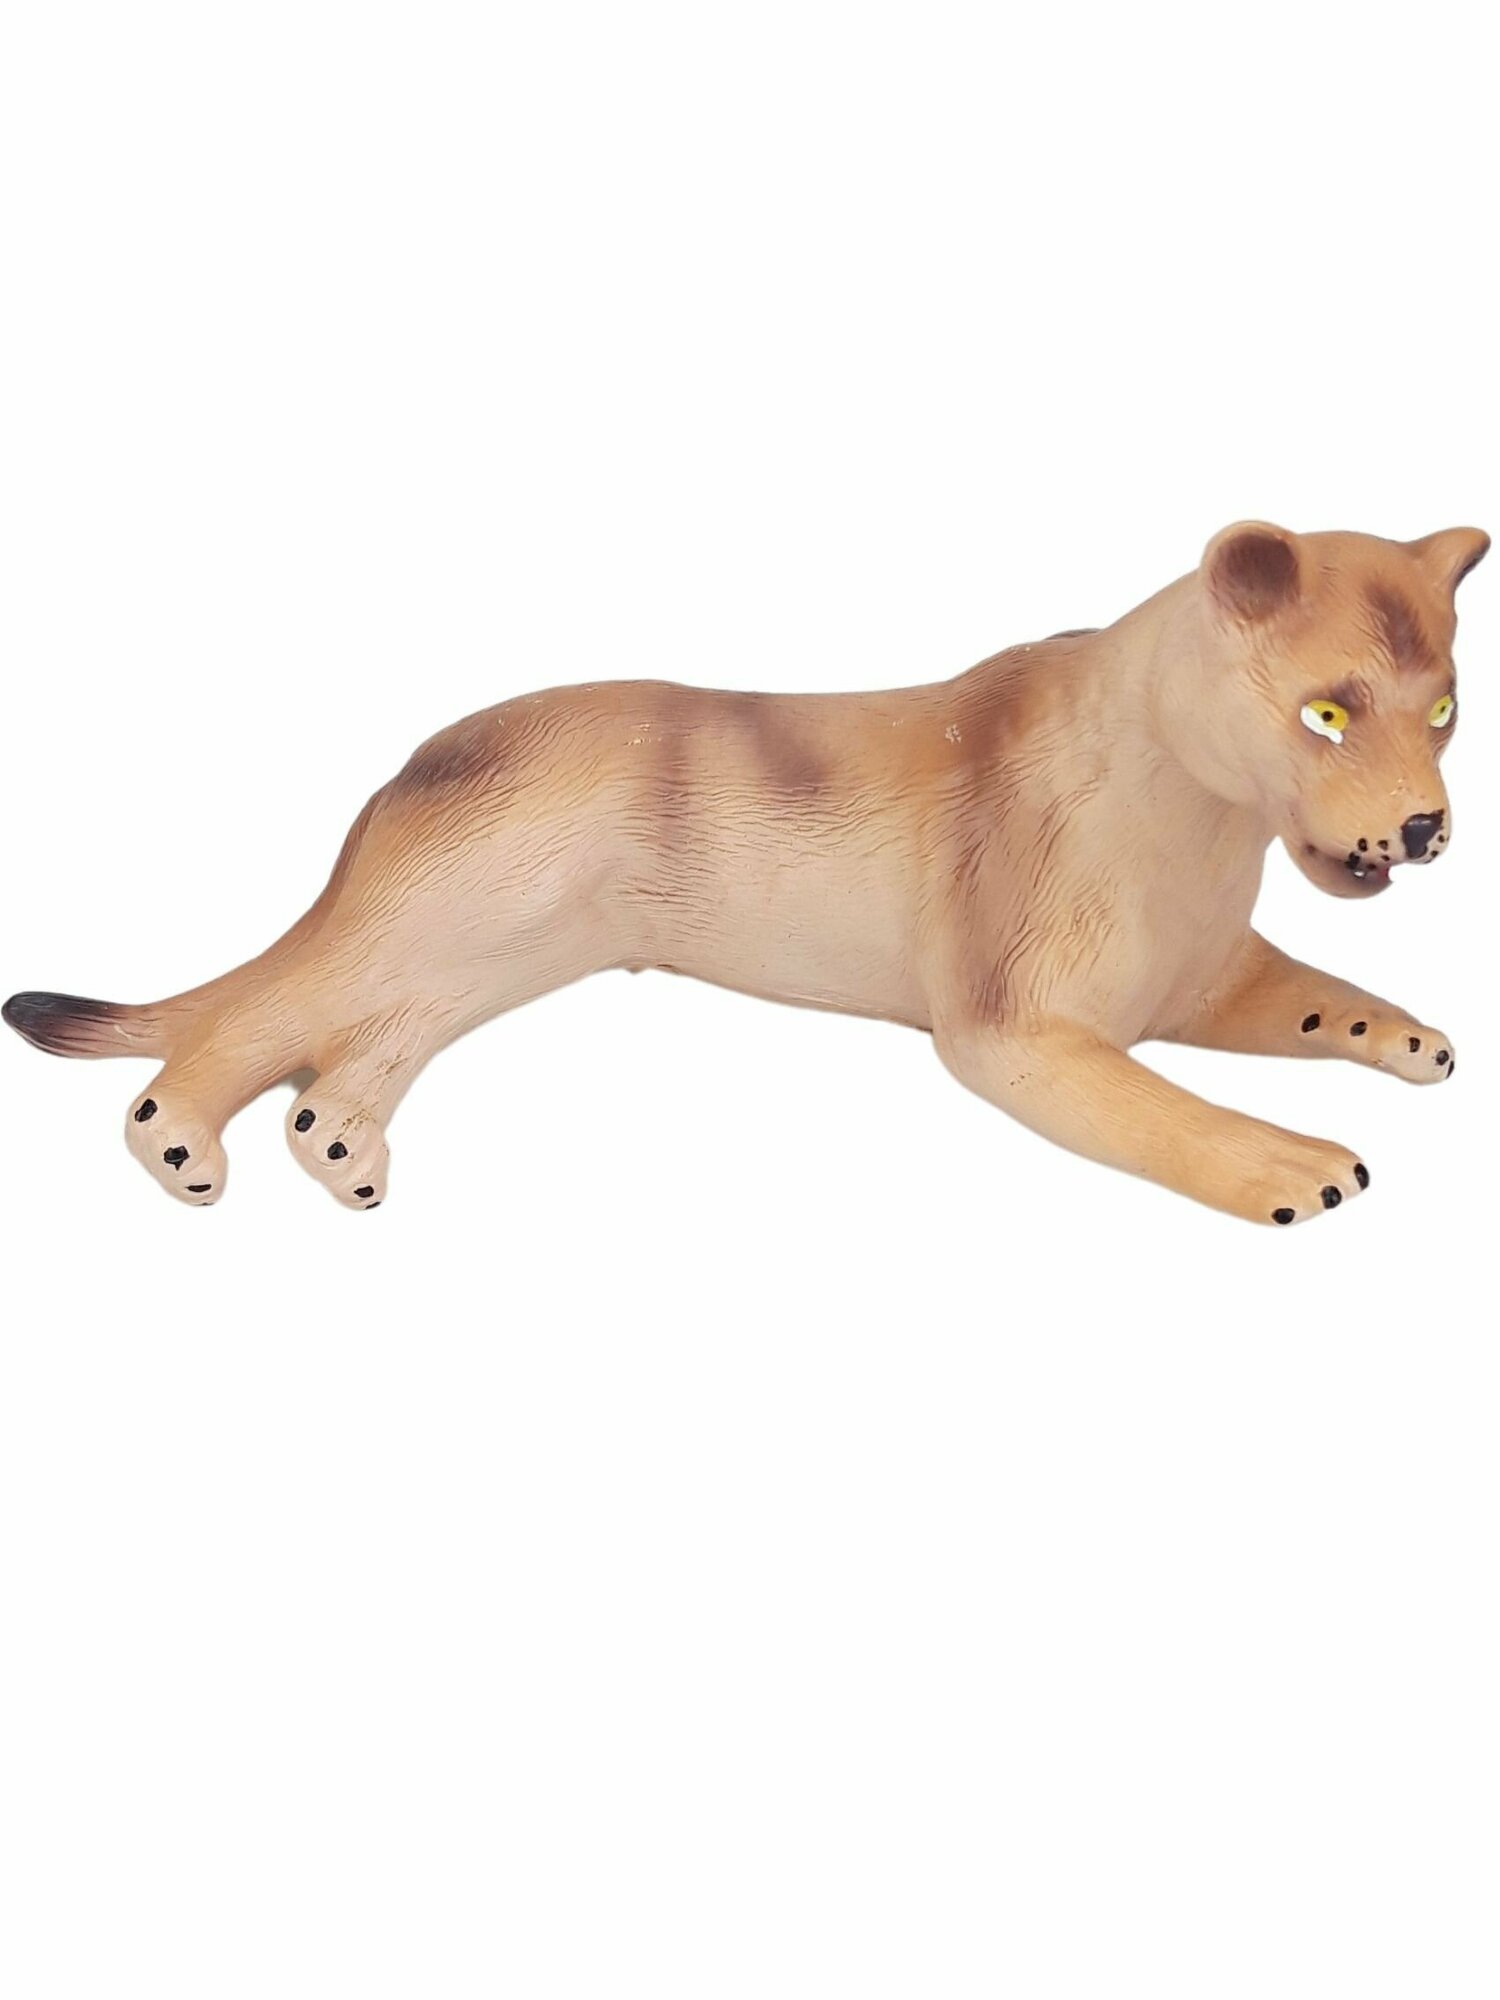 Фигурка животного Львица, большая коллекционная декоративная игрушка из серии Дикие животные для детей